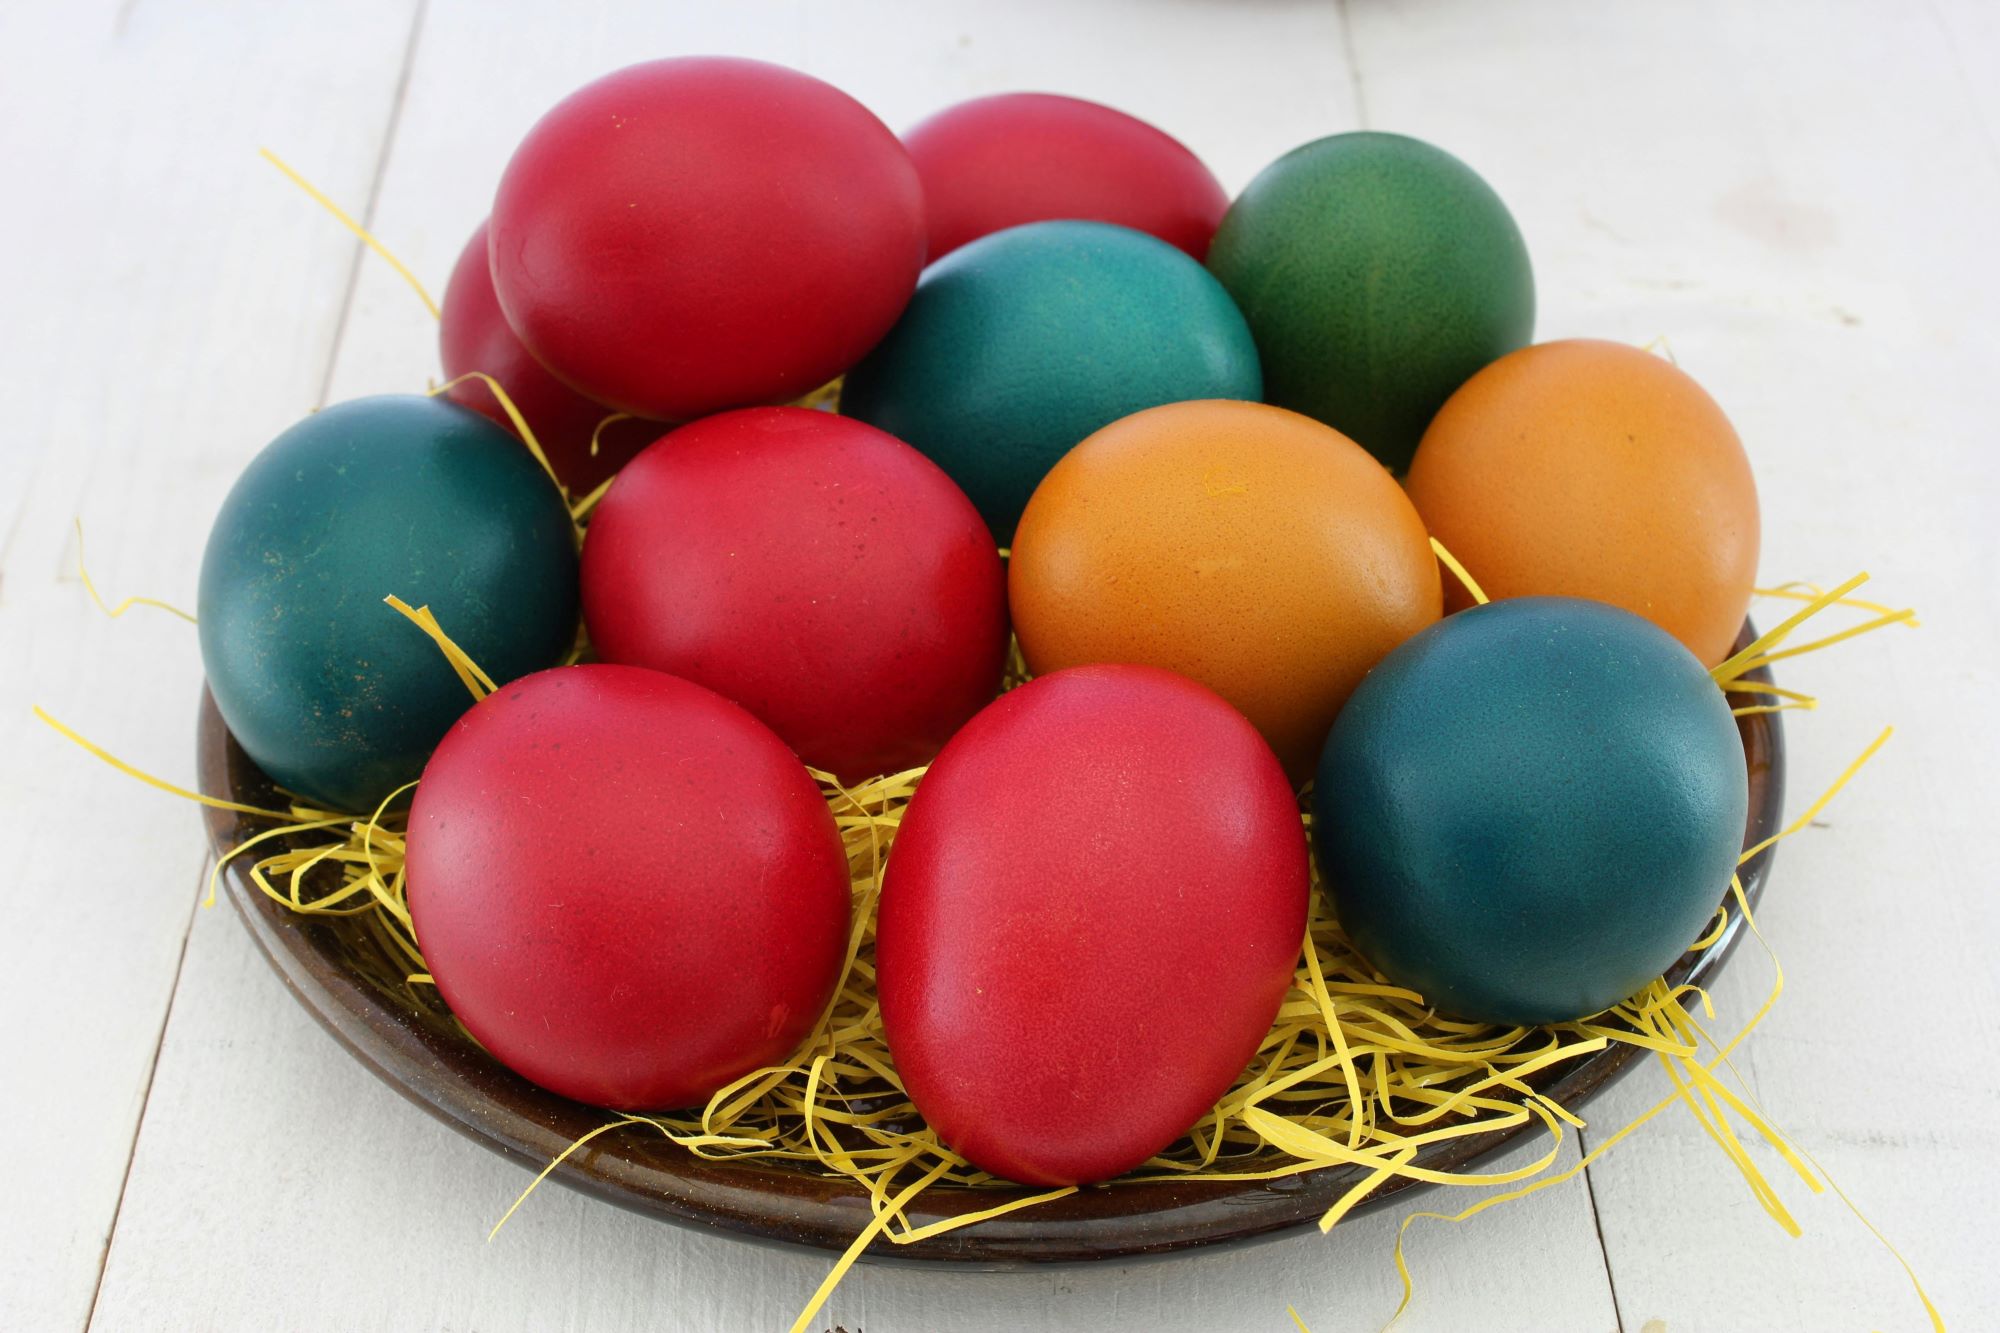 Easter eggs, czyli kolorowe pisanki.